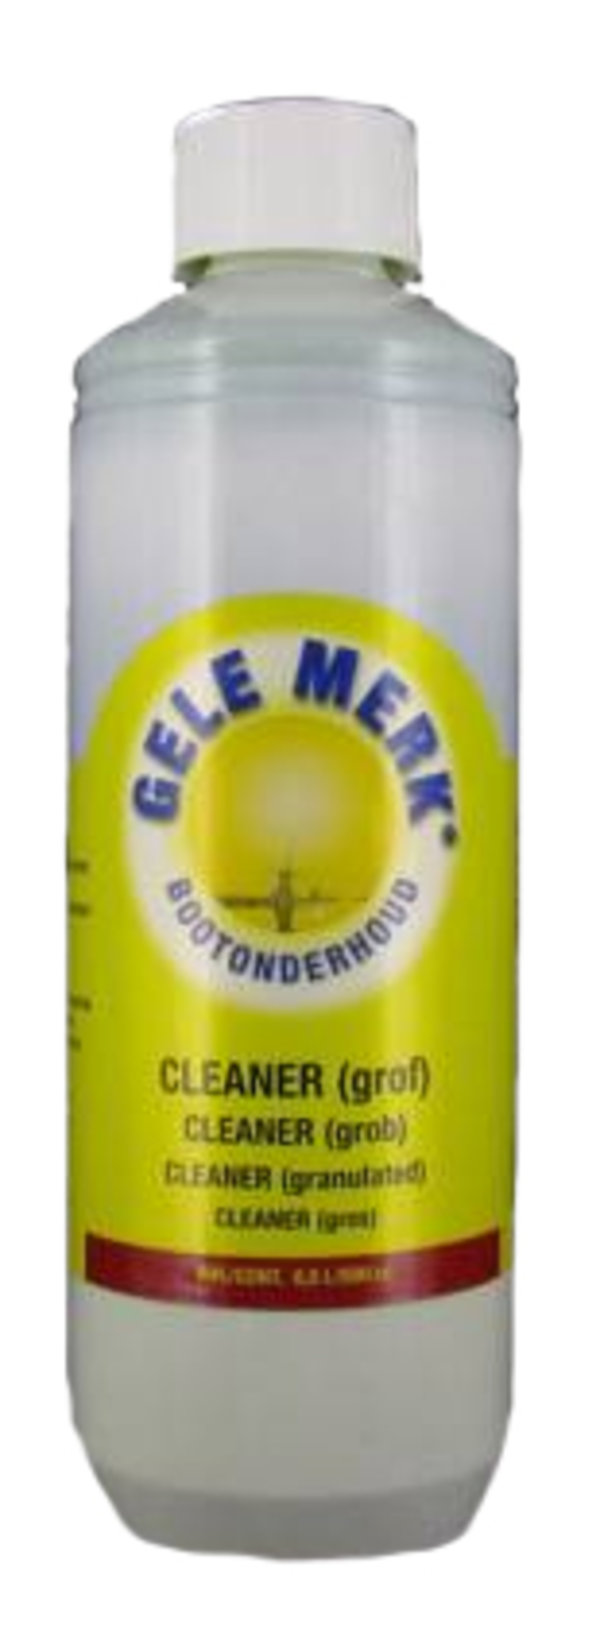 Gele Merk, Cleaner (grof) 500ml. 